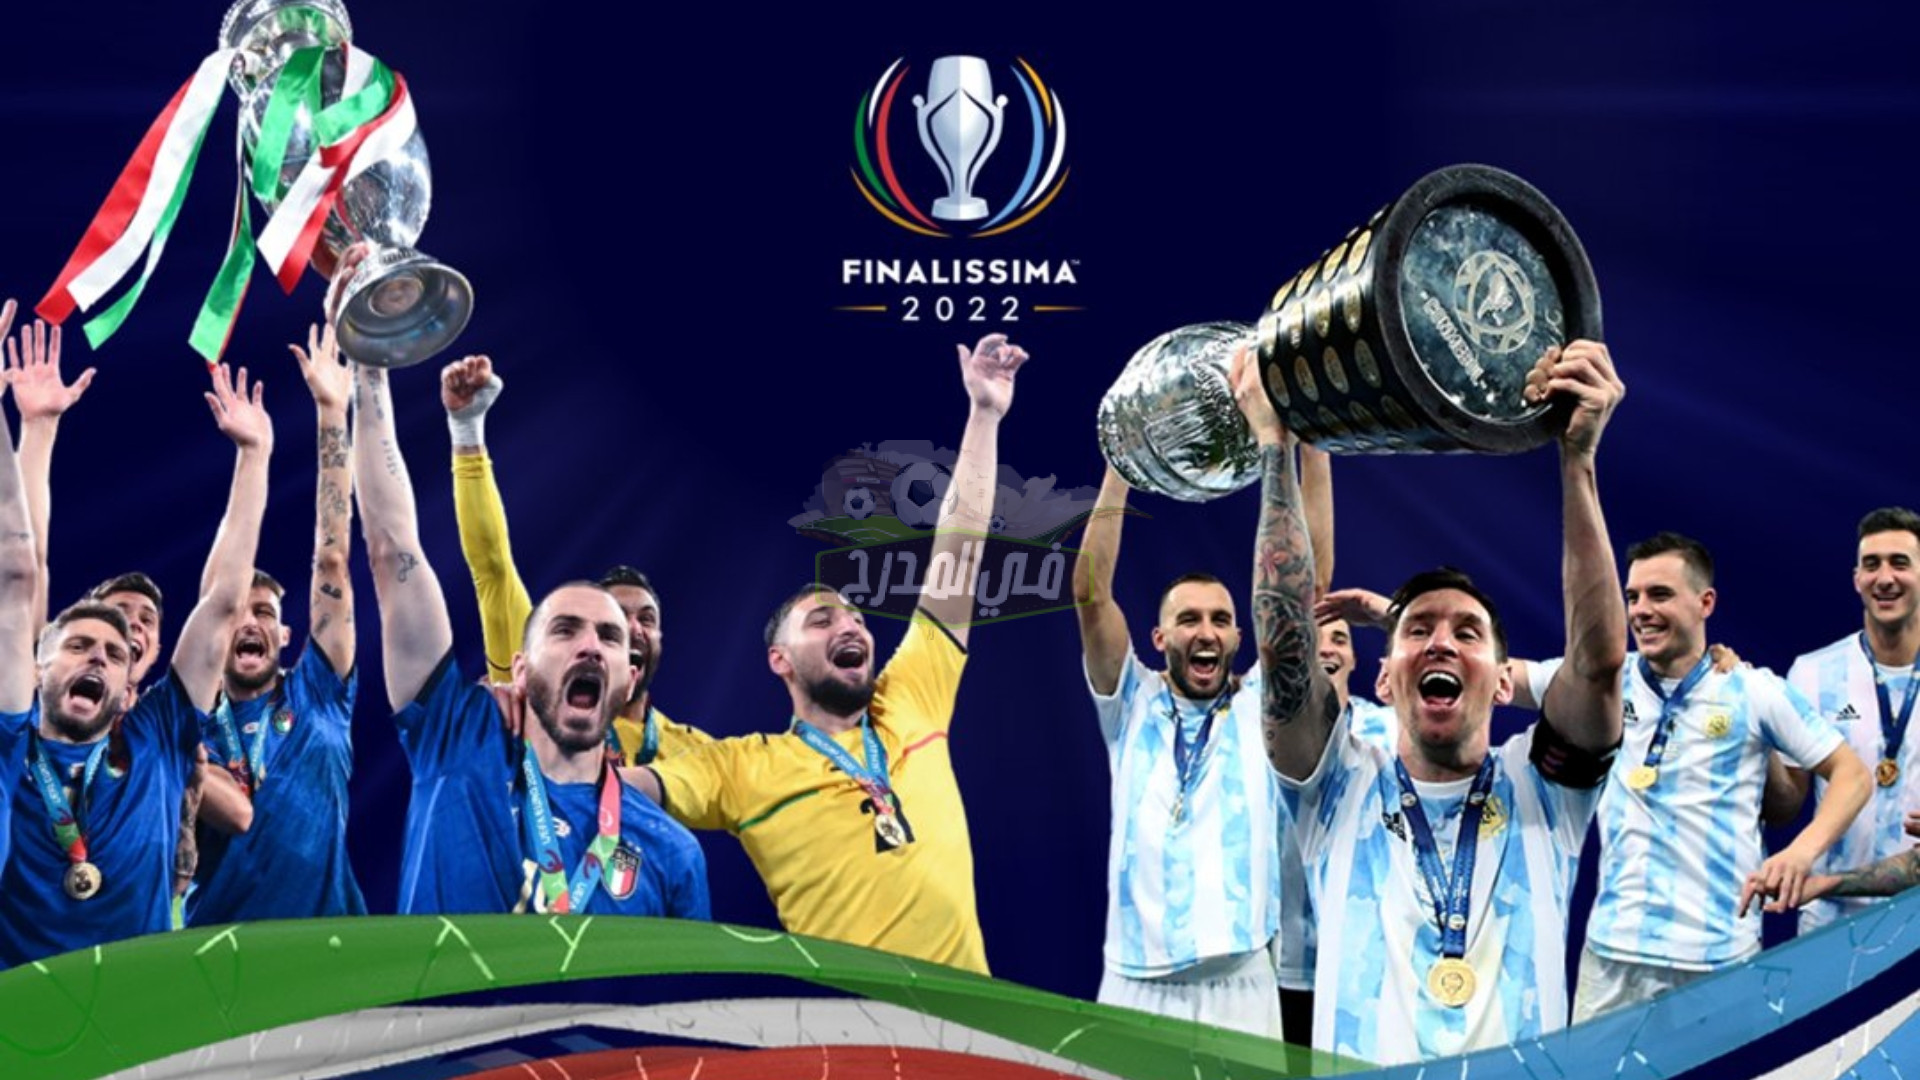 موعد مباراة الأرجنتين وإيطاليا Argentina vs Italy في كأس فيناليسما والقنوات الناقلة لها